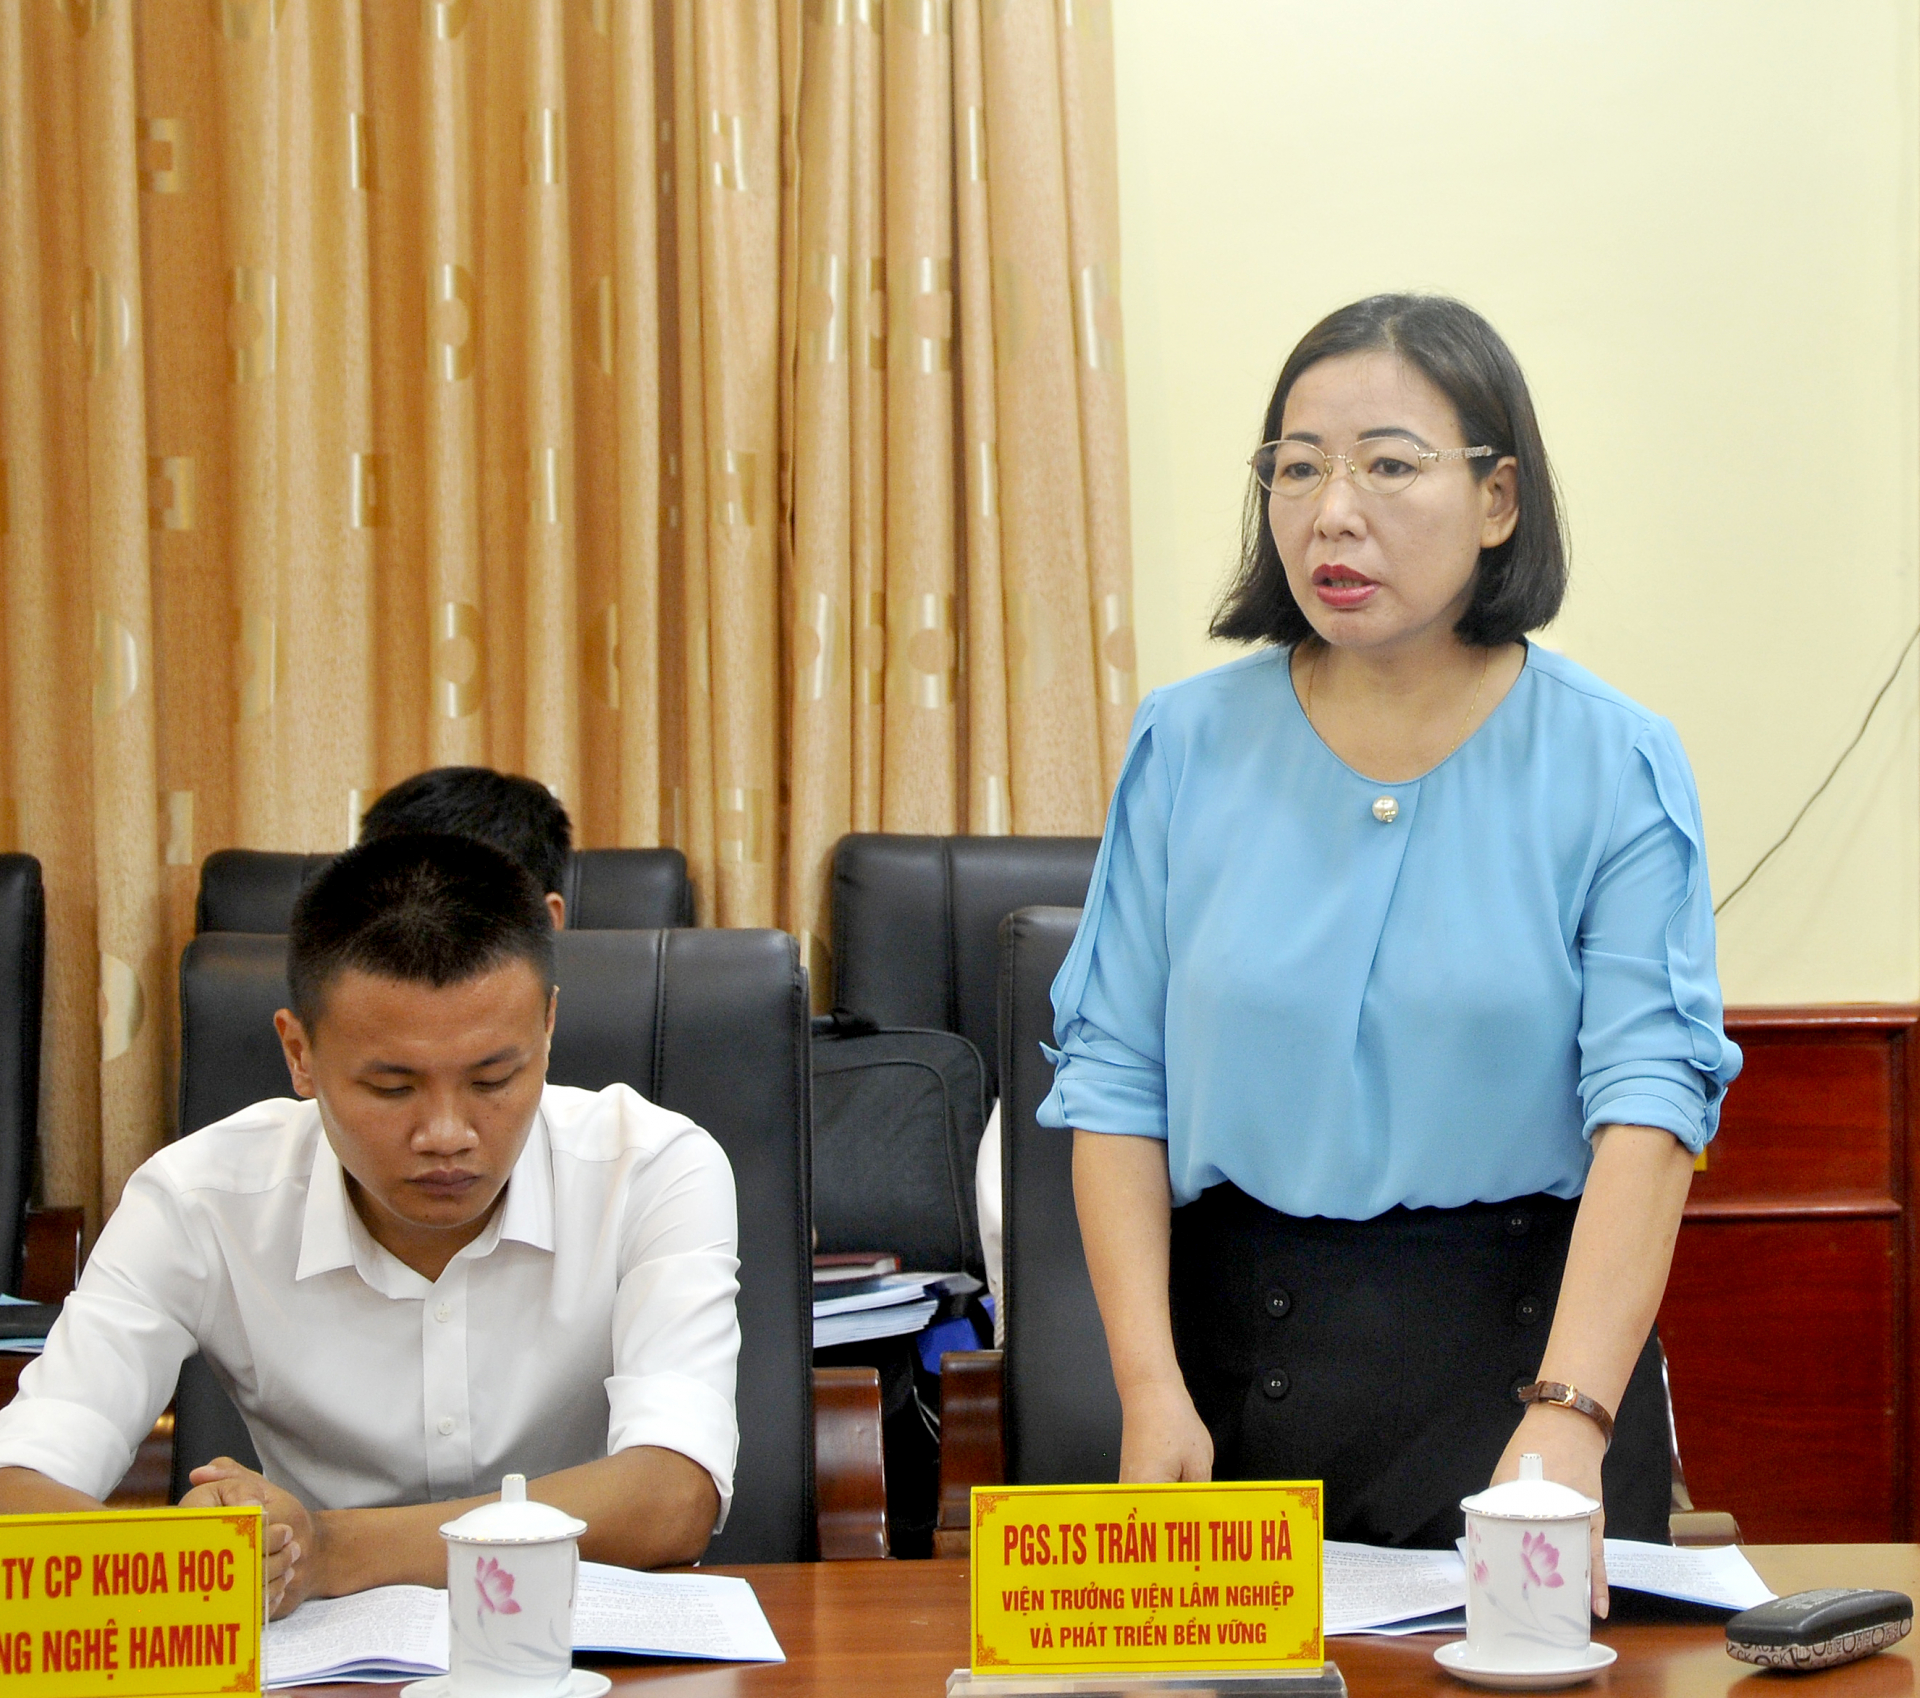 Viện trưởng Viện LN&PTBV Trần Thị Thu Hà phát biểu tại buổi làm việc.